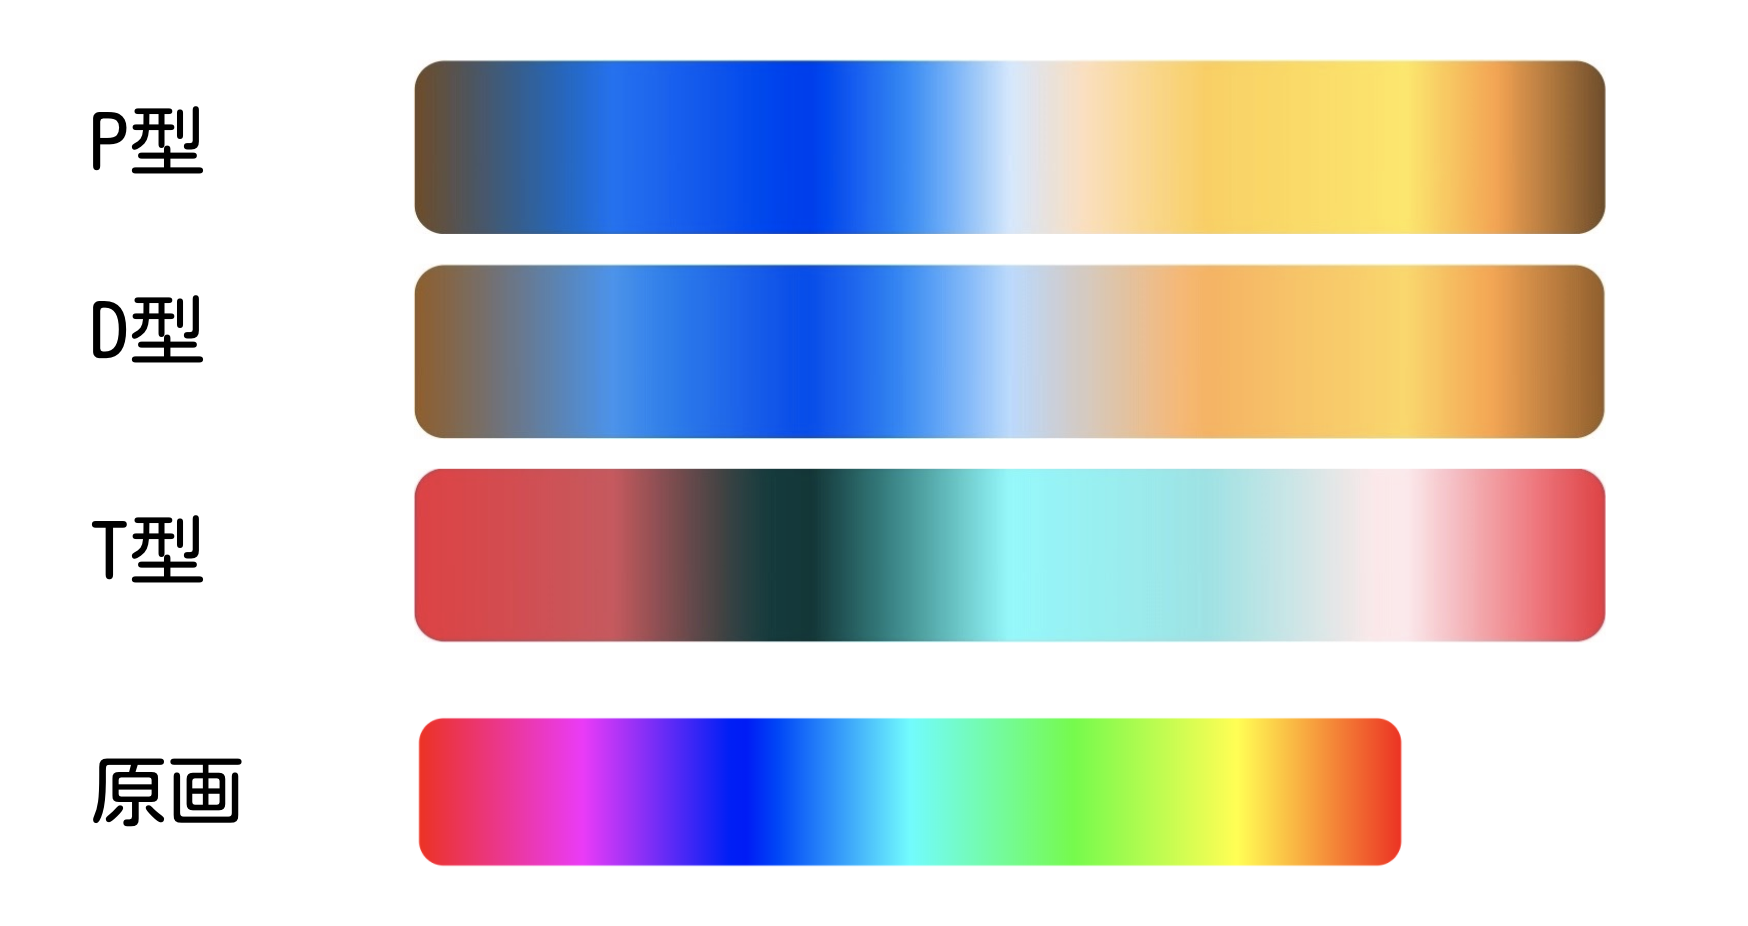 色覚異常に配慮されていないコンテンツ発見器を作りたい（1）